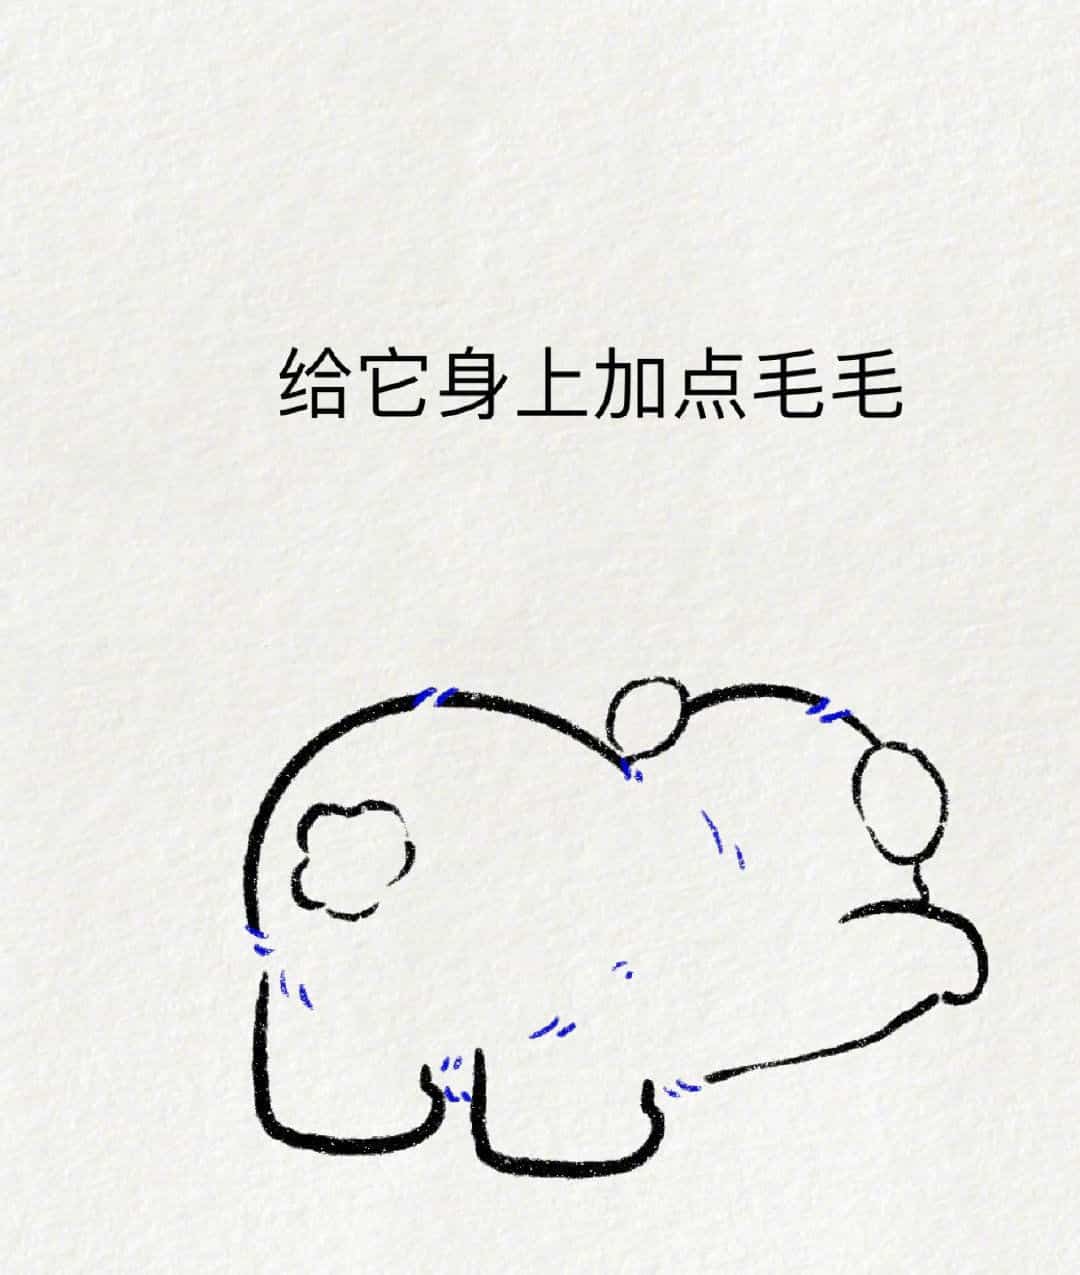 可爱动物大熊猫趴地撅屁股简笔画画法教程图片-1-6TU